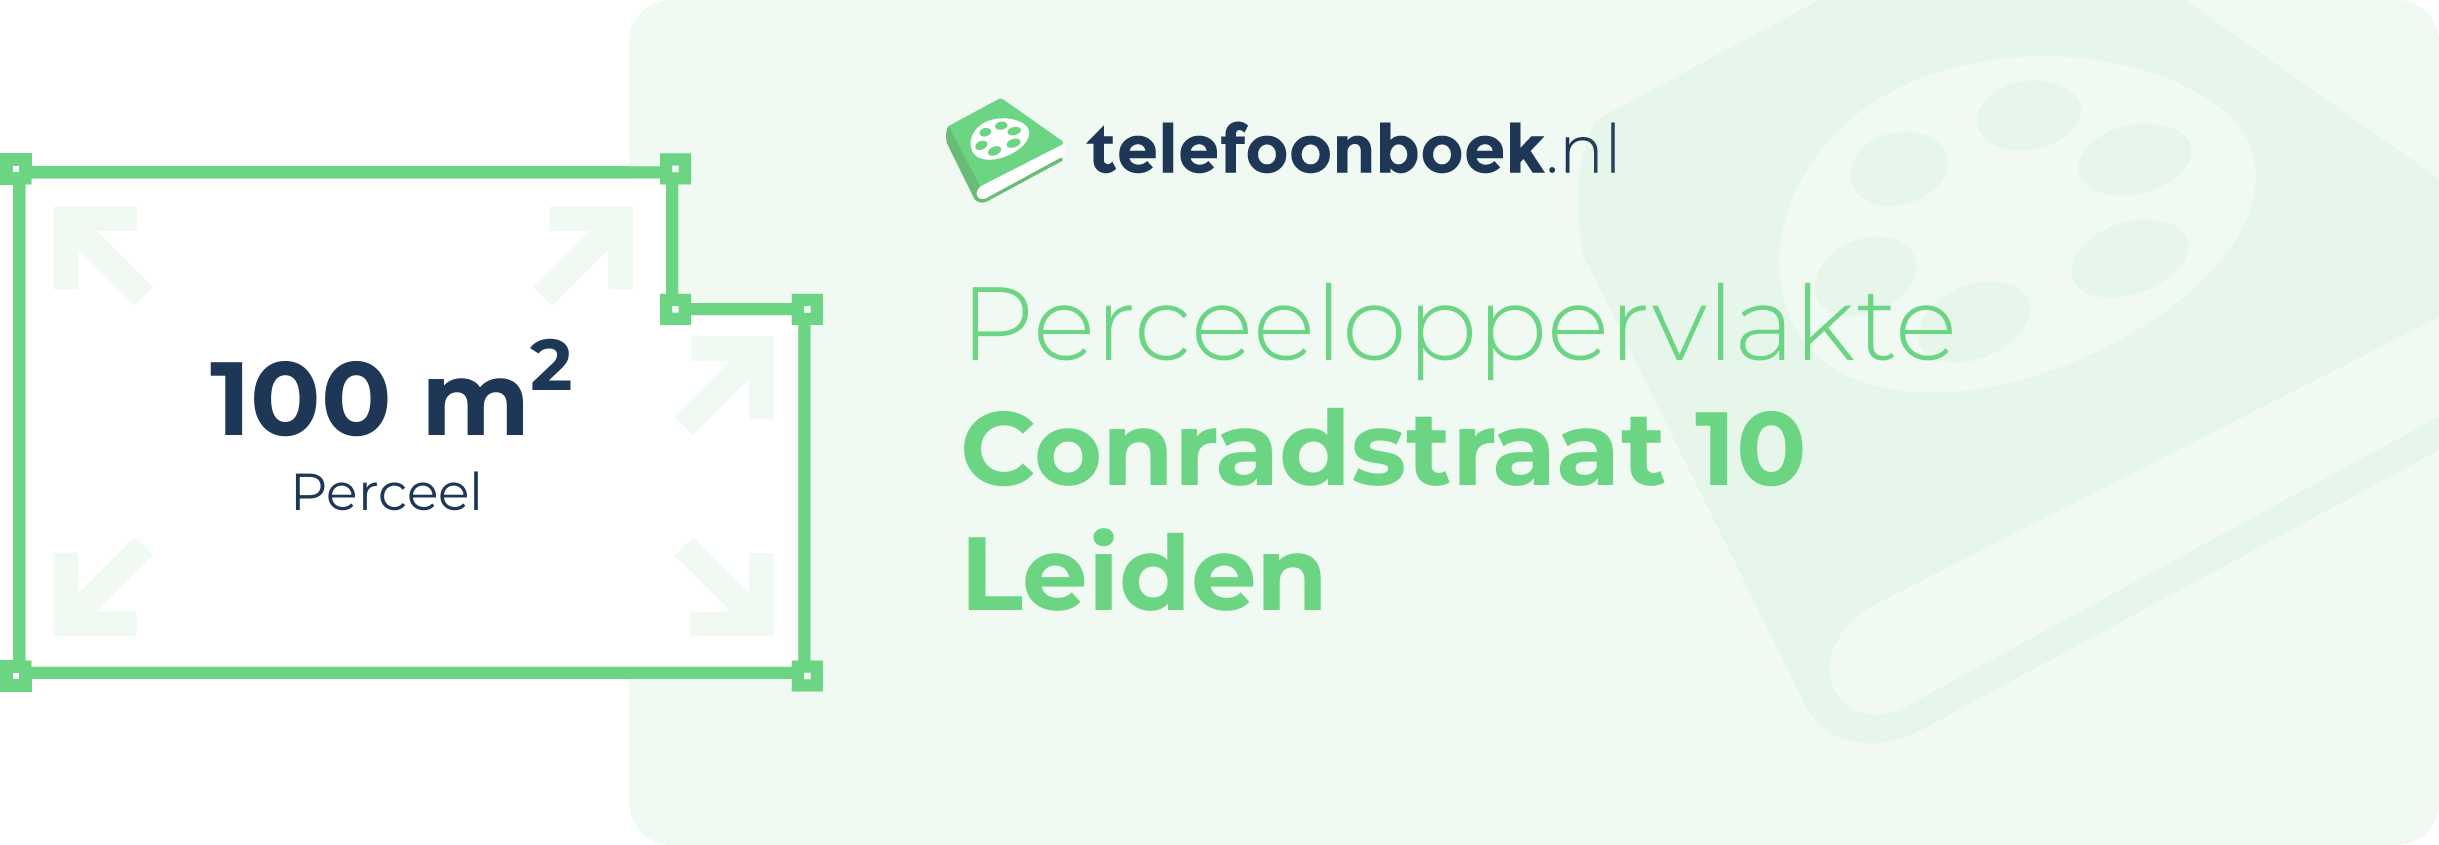 Perceeloppervlakte Conradstraat 10 Leiden